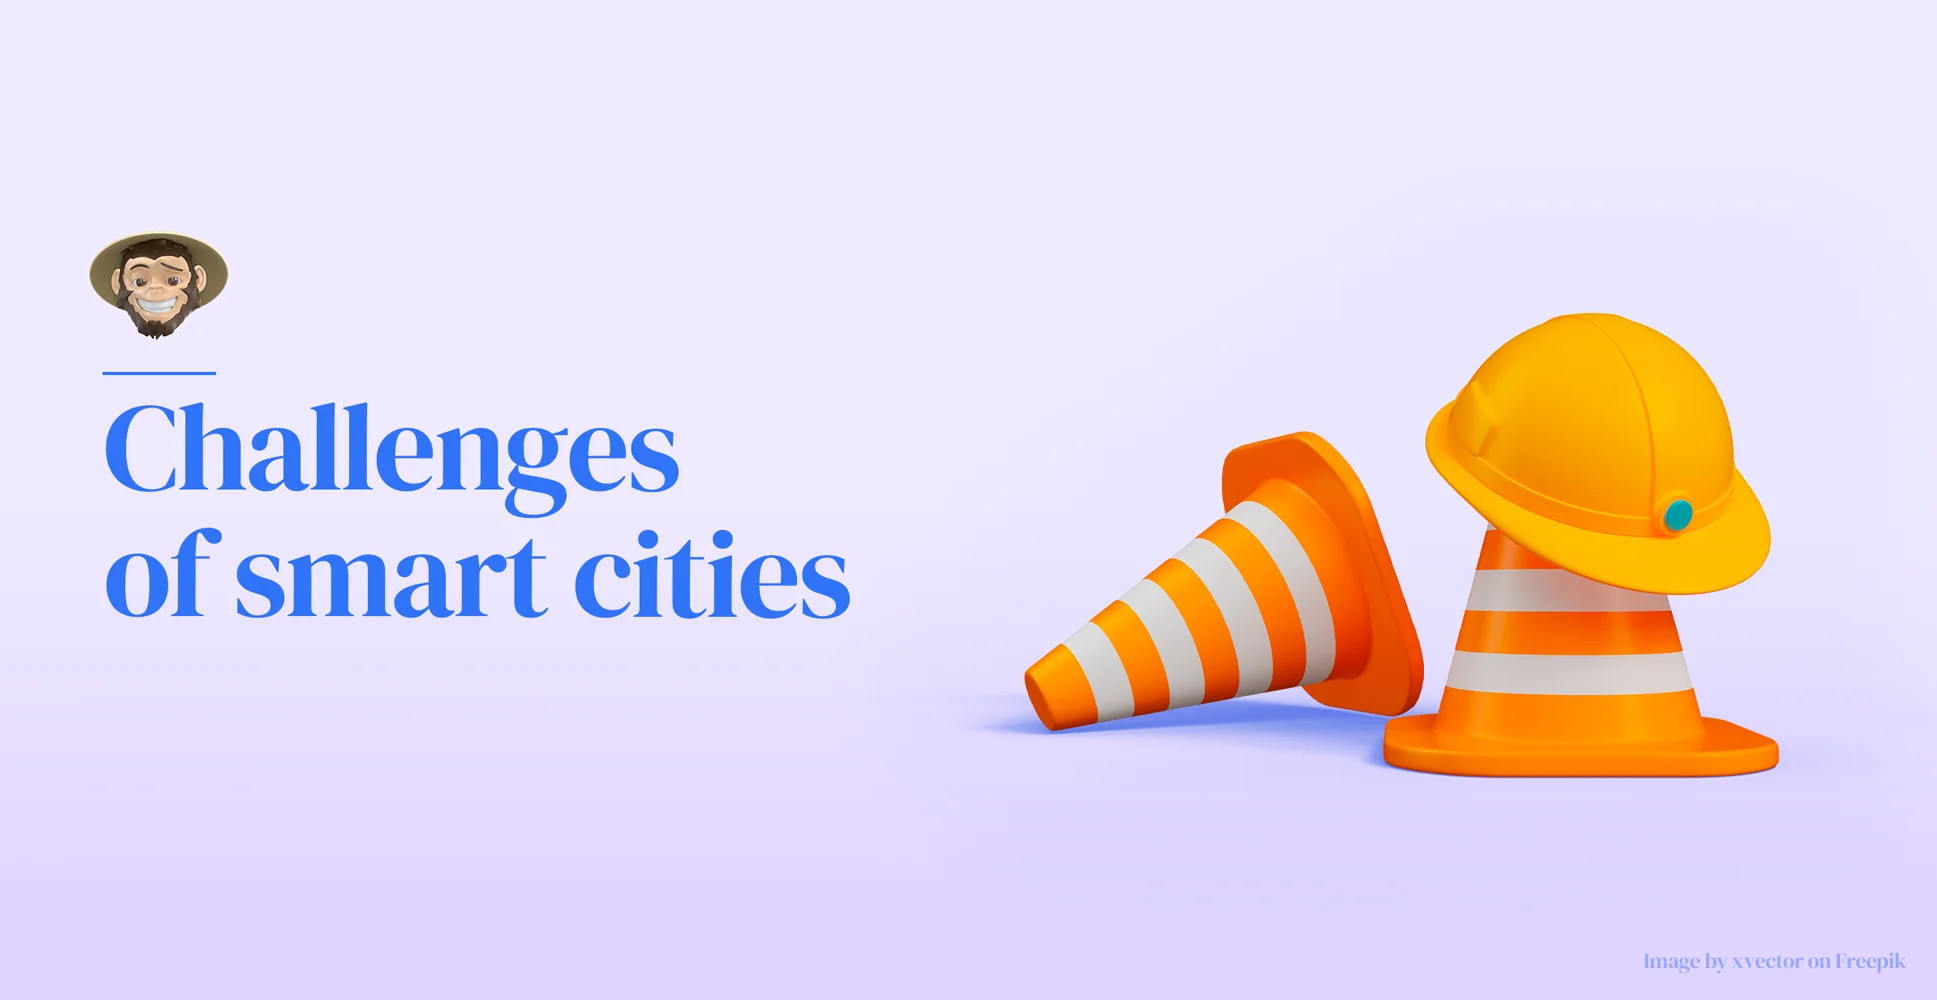 Challenges of smart cities